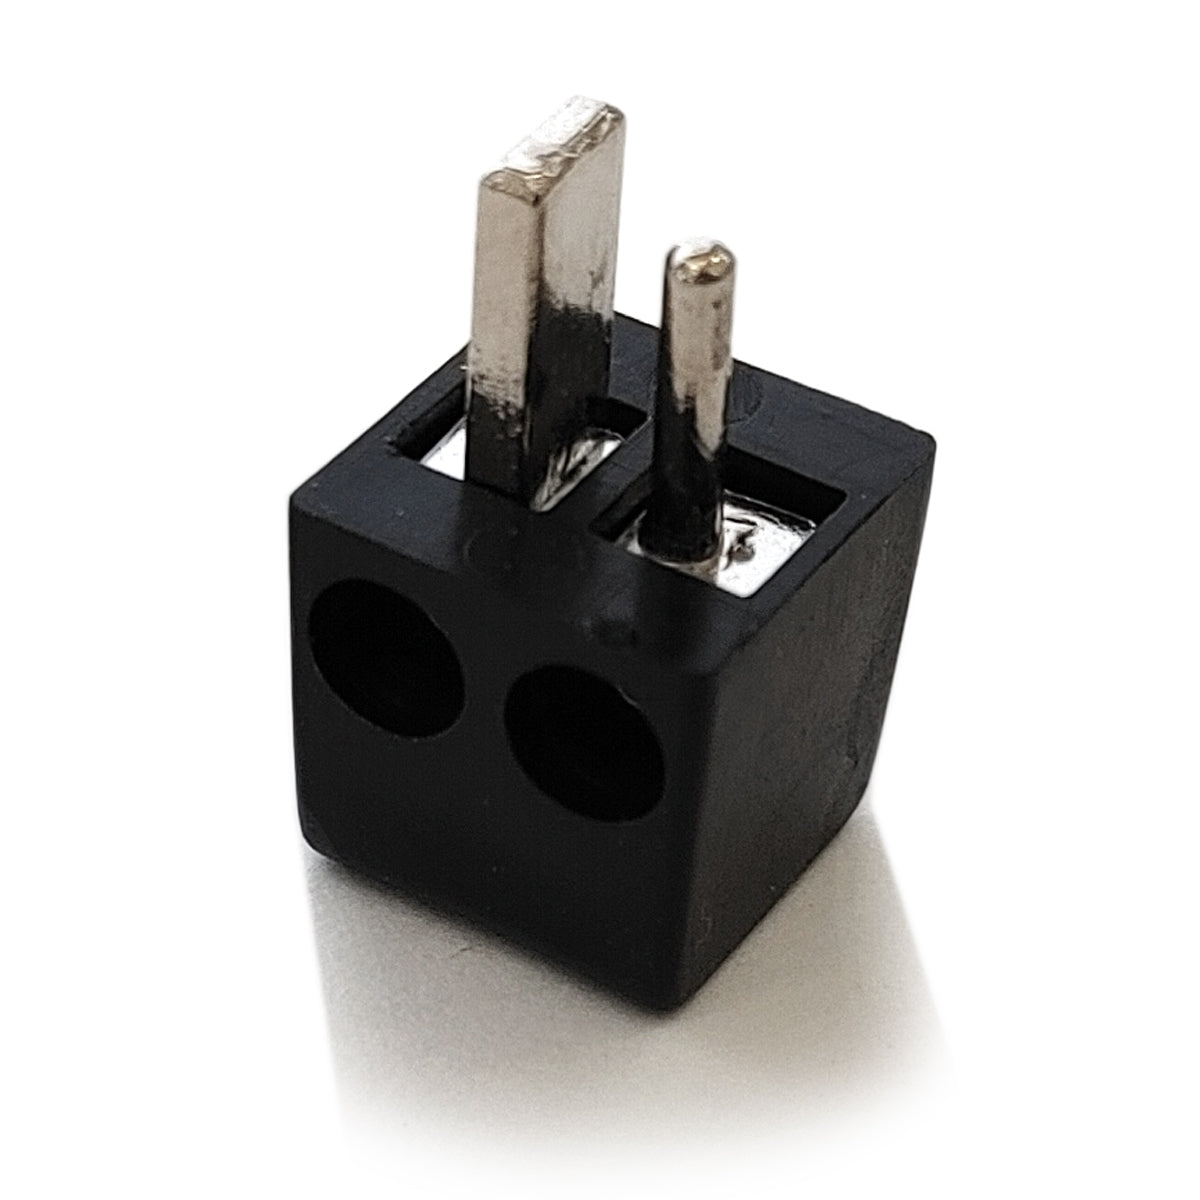 2x Lautsprecherstecker Mini DIN gewinkelt Schwarz schraubbar Audio Boxen Stecker